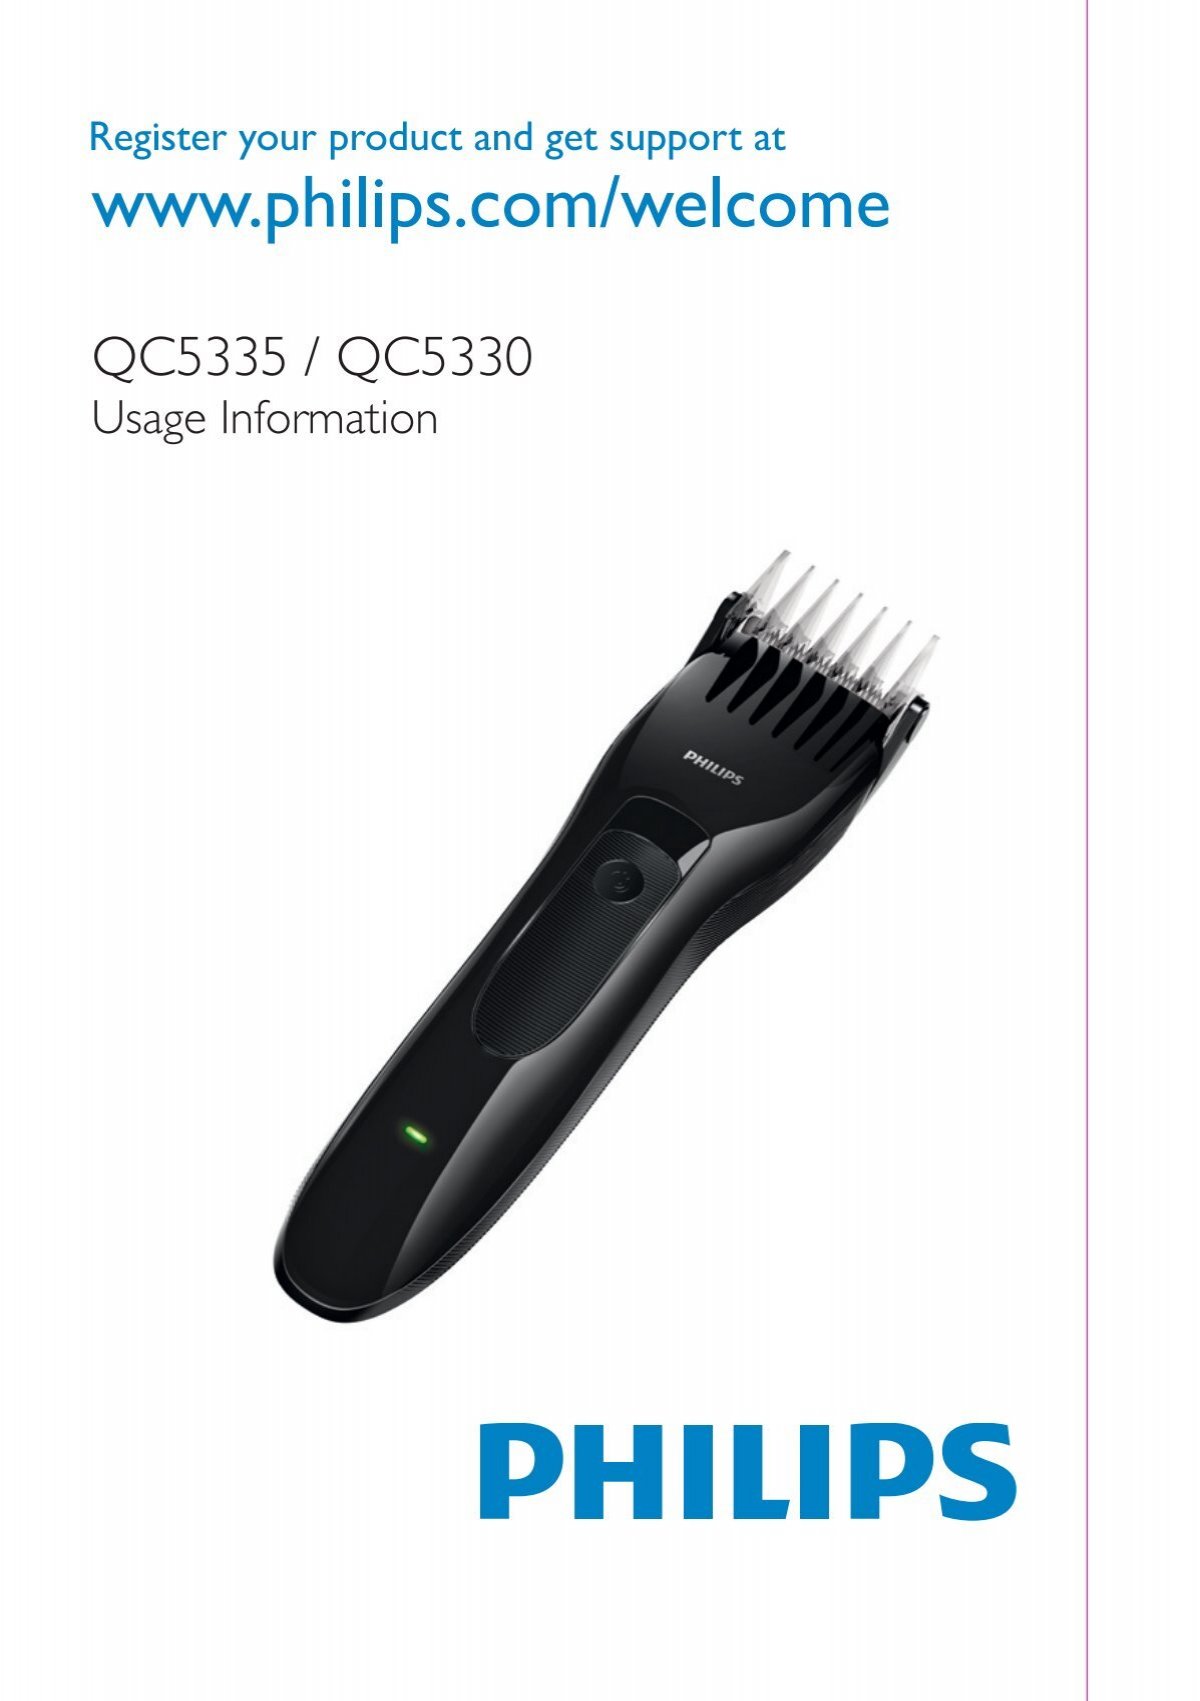 philips qc5330 hair clipper